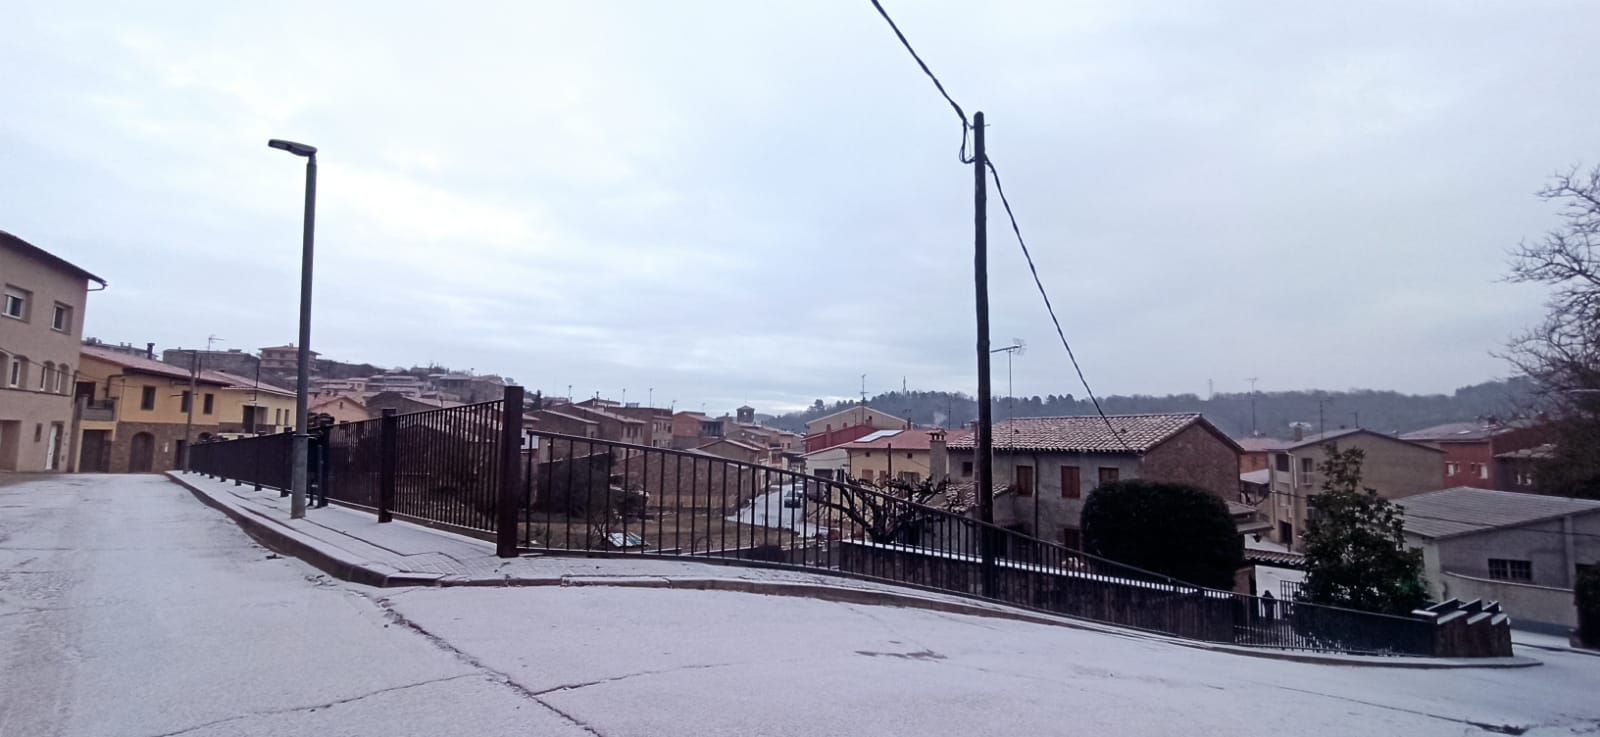 Primera nevada de l'any a l'Estany